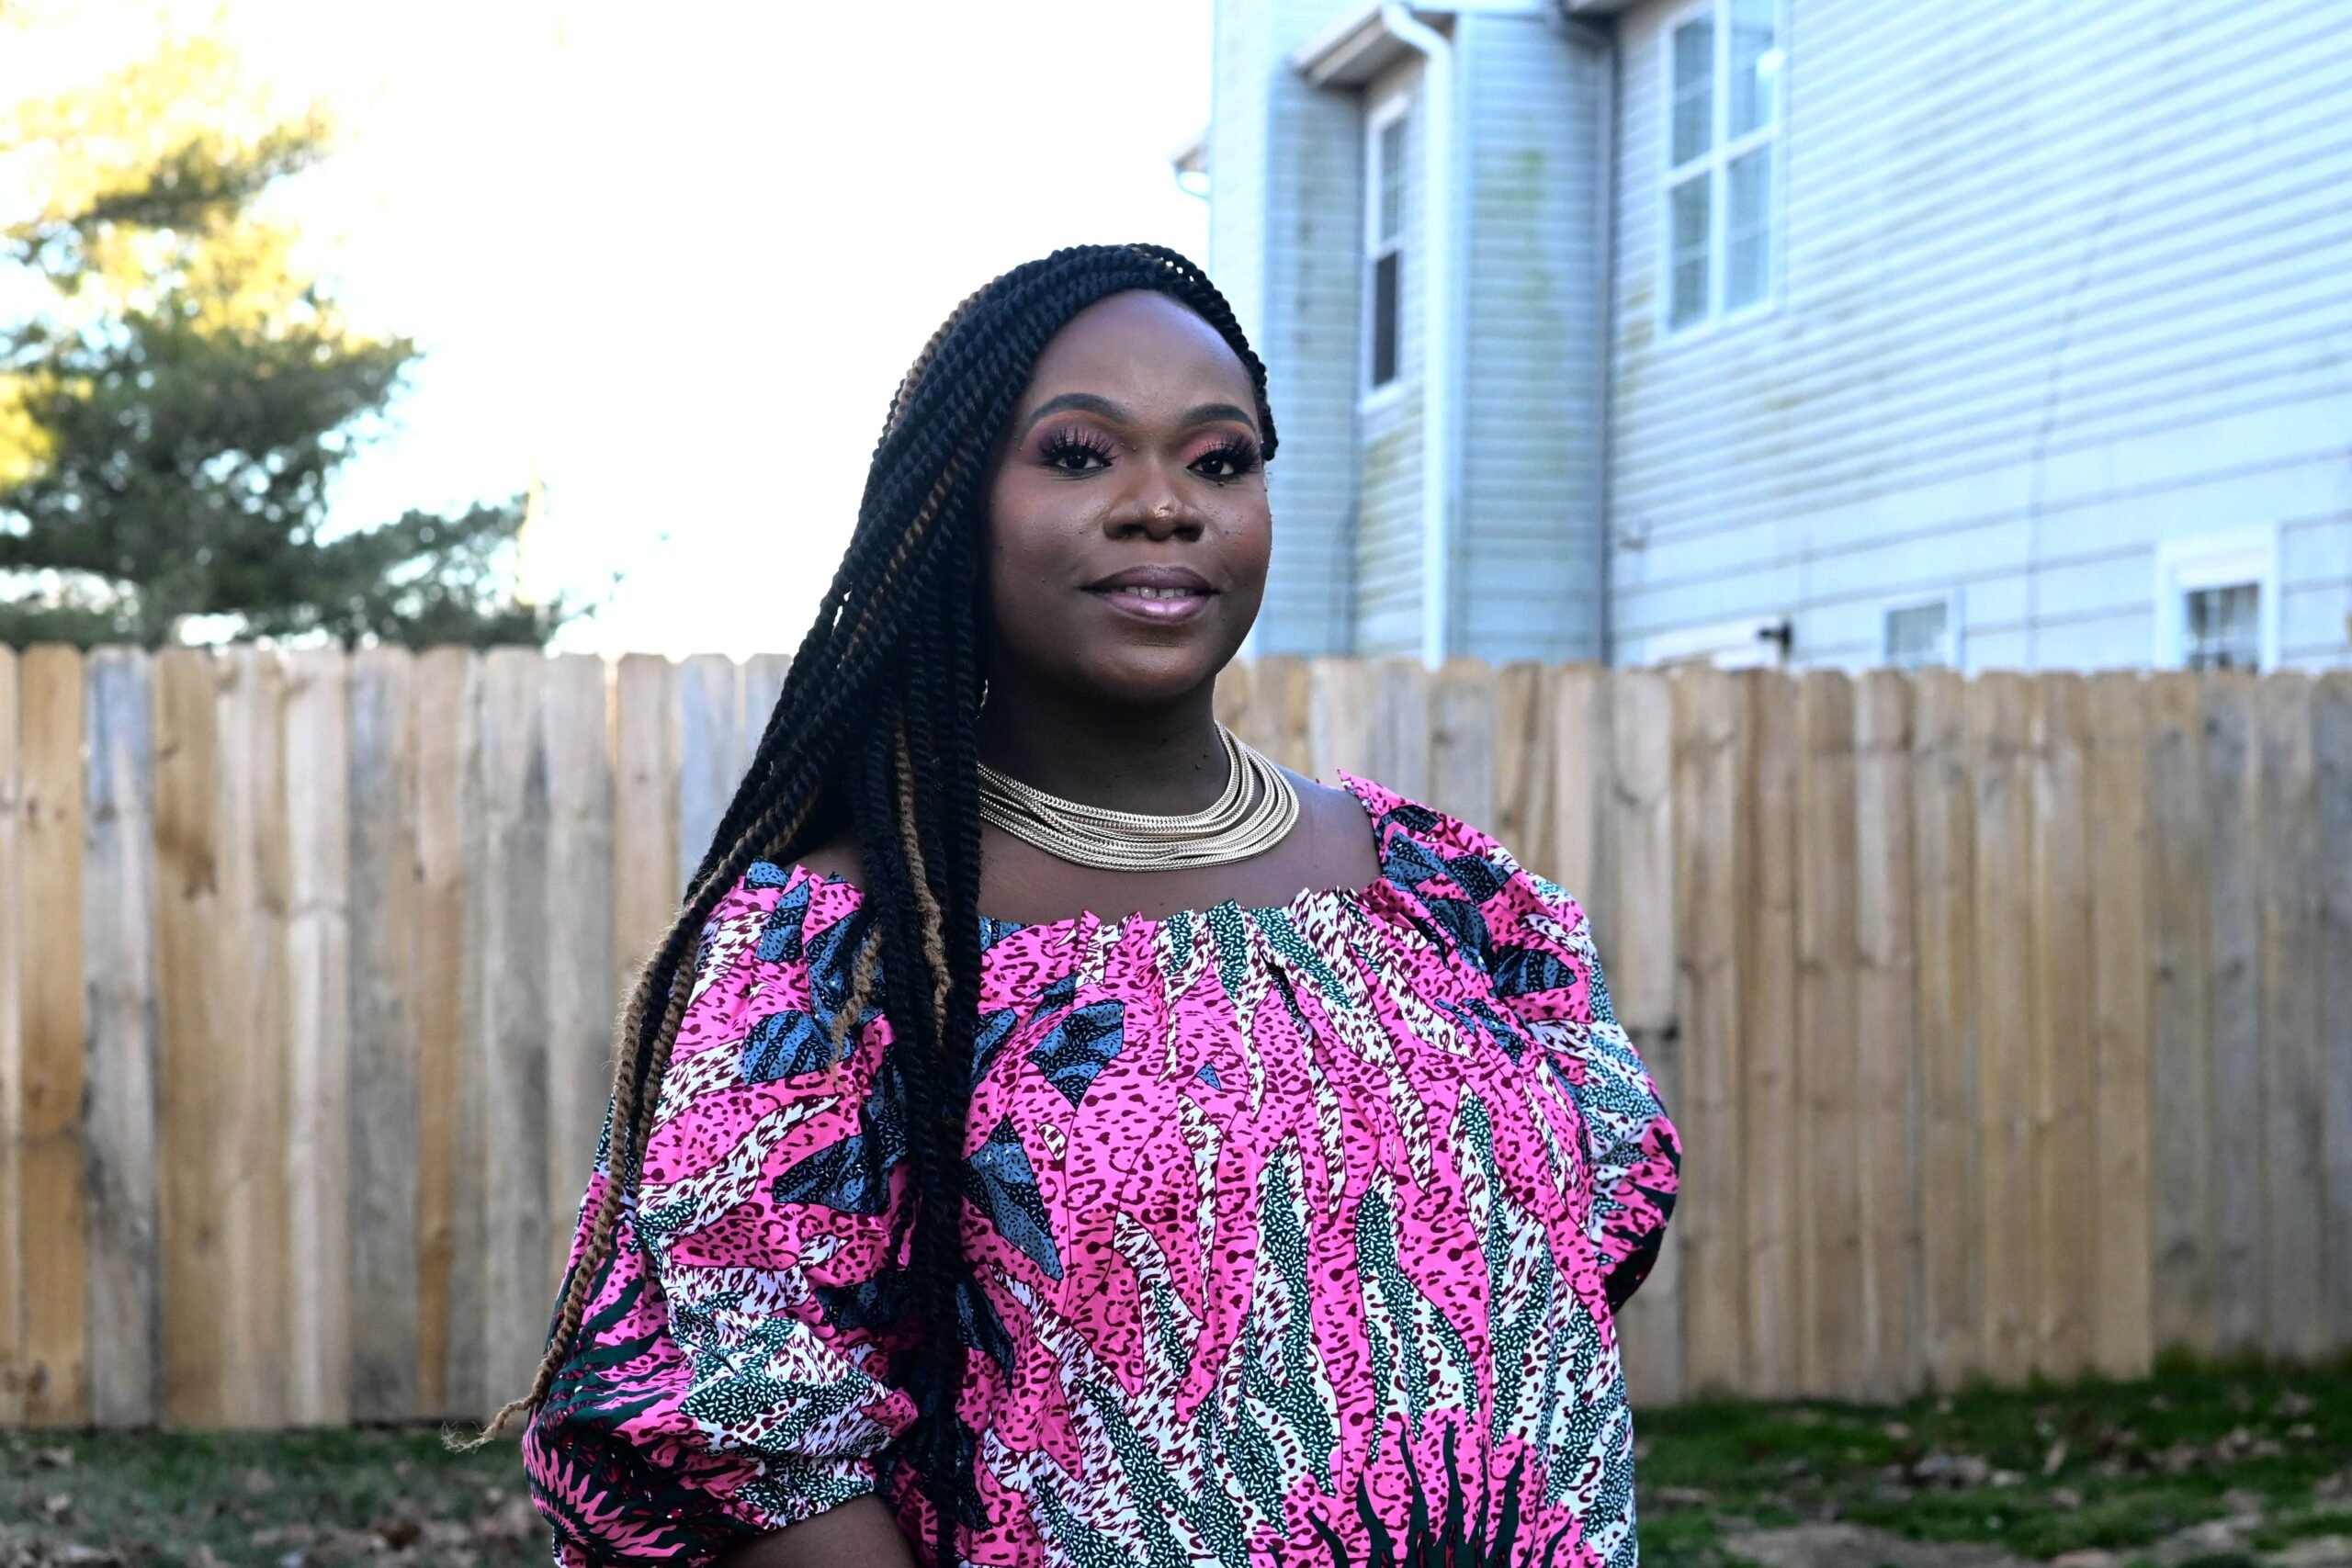 Refugiada compartilha reflexões sobre ser uma mulher negra nos EUA – UNHCR  ACNUR Brasil